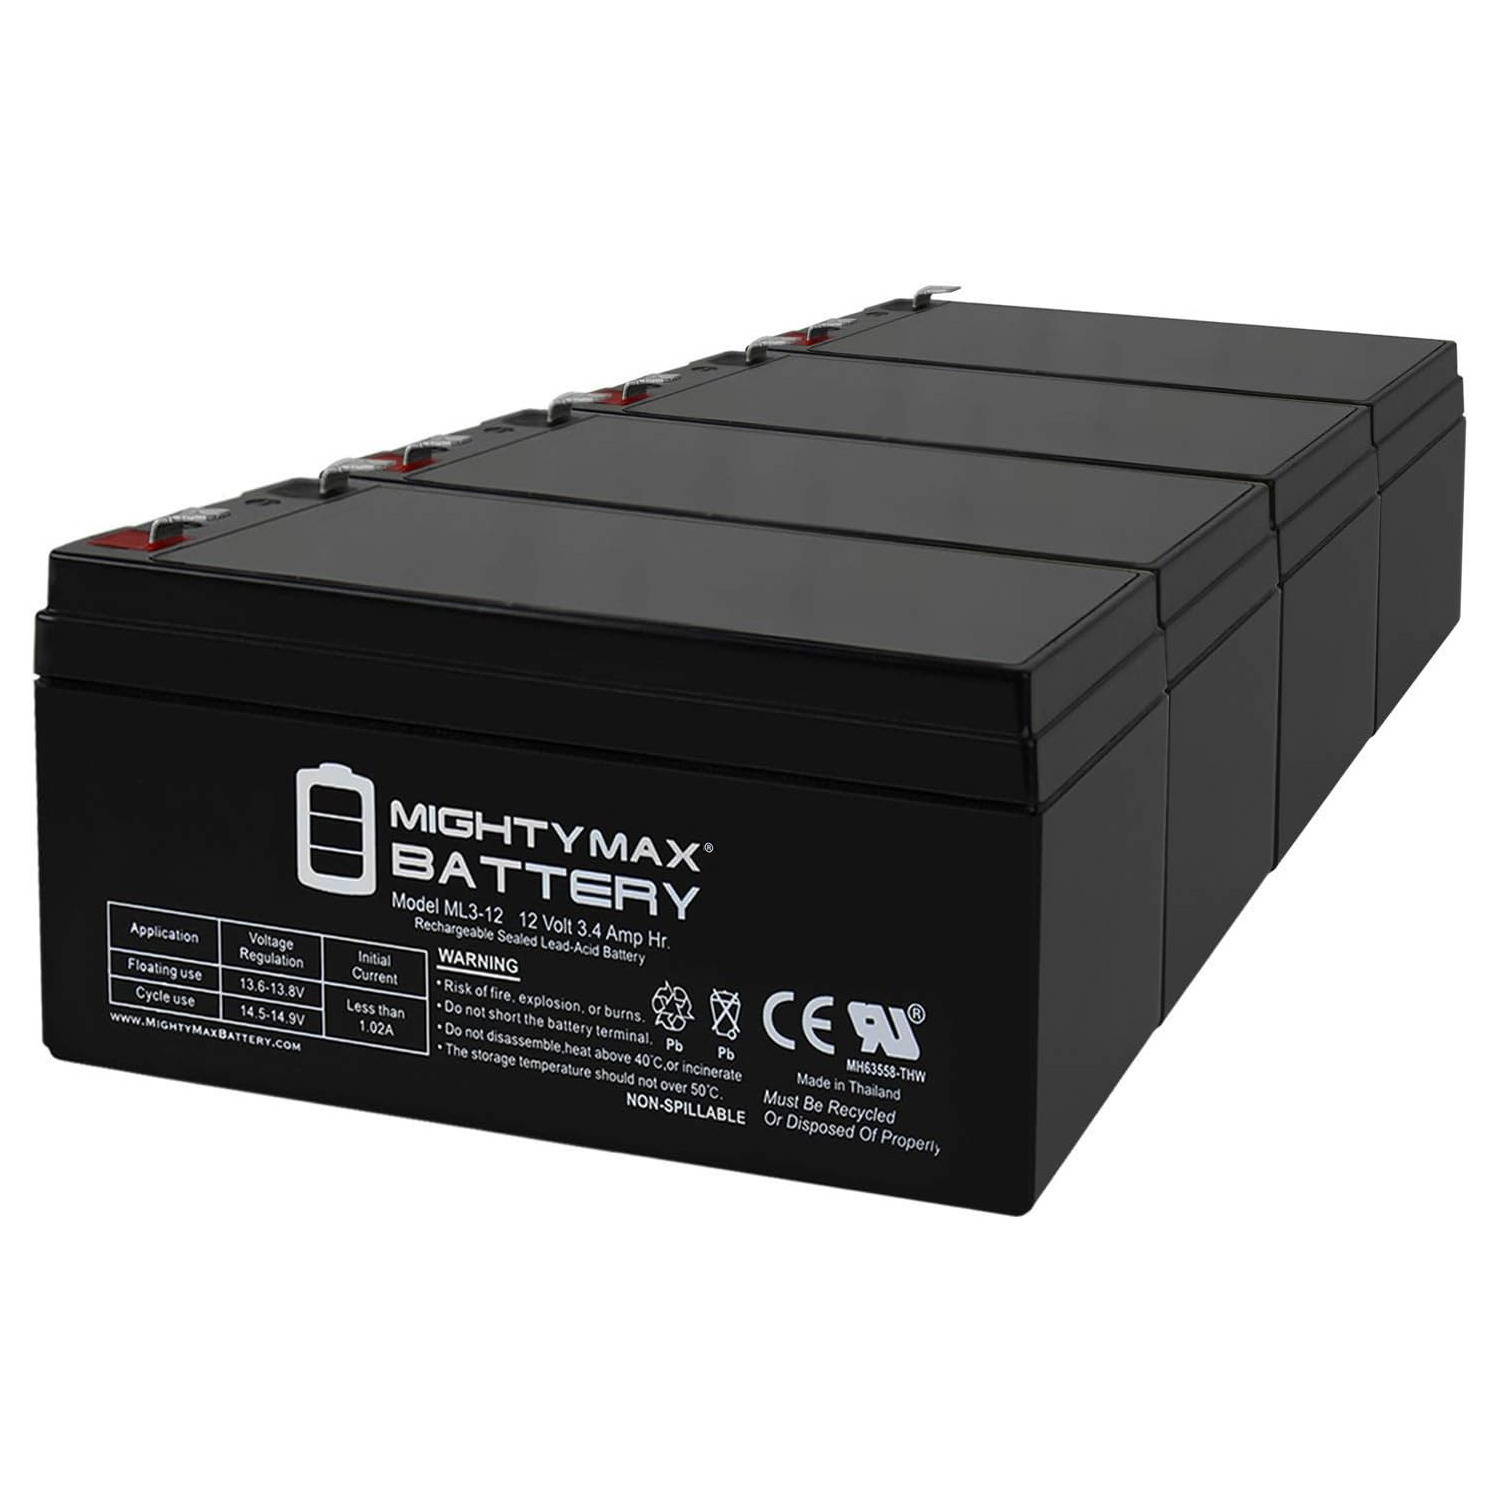 ML3-12 12V 3.4AH SLA Battery for Emergency Exit Lighting Systems - 4 Pack